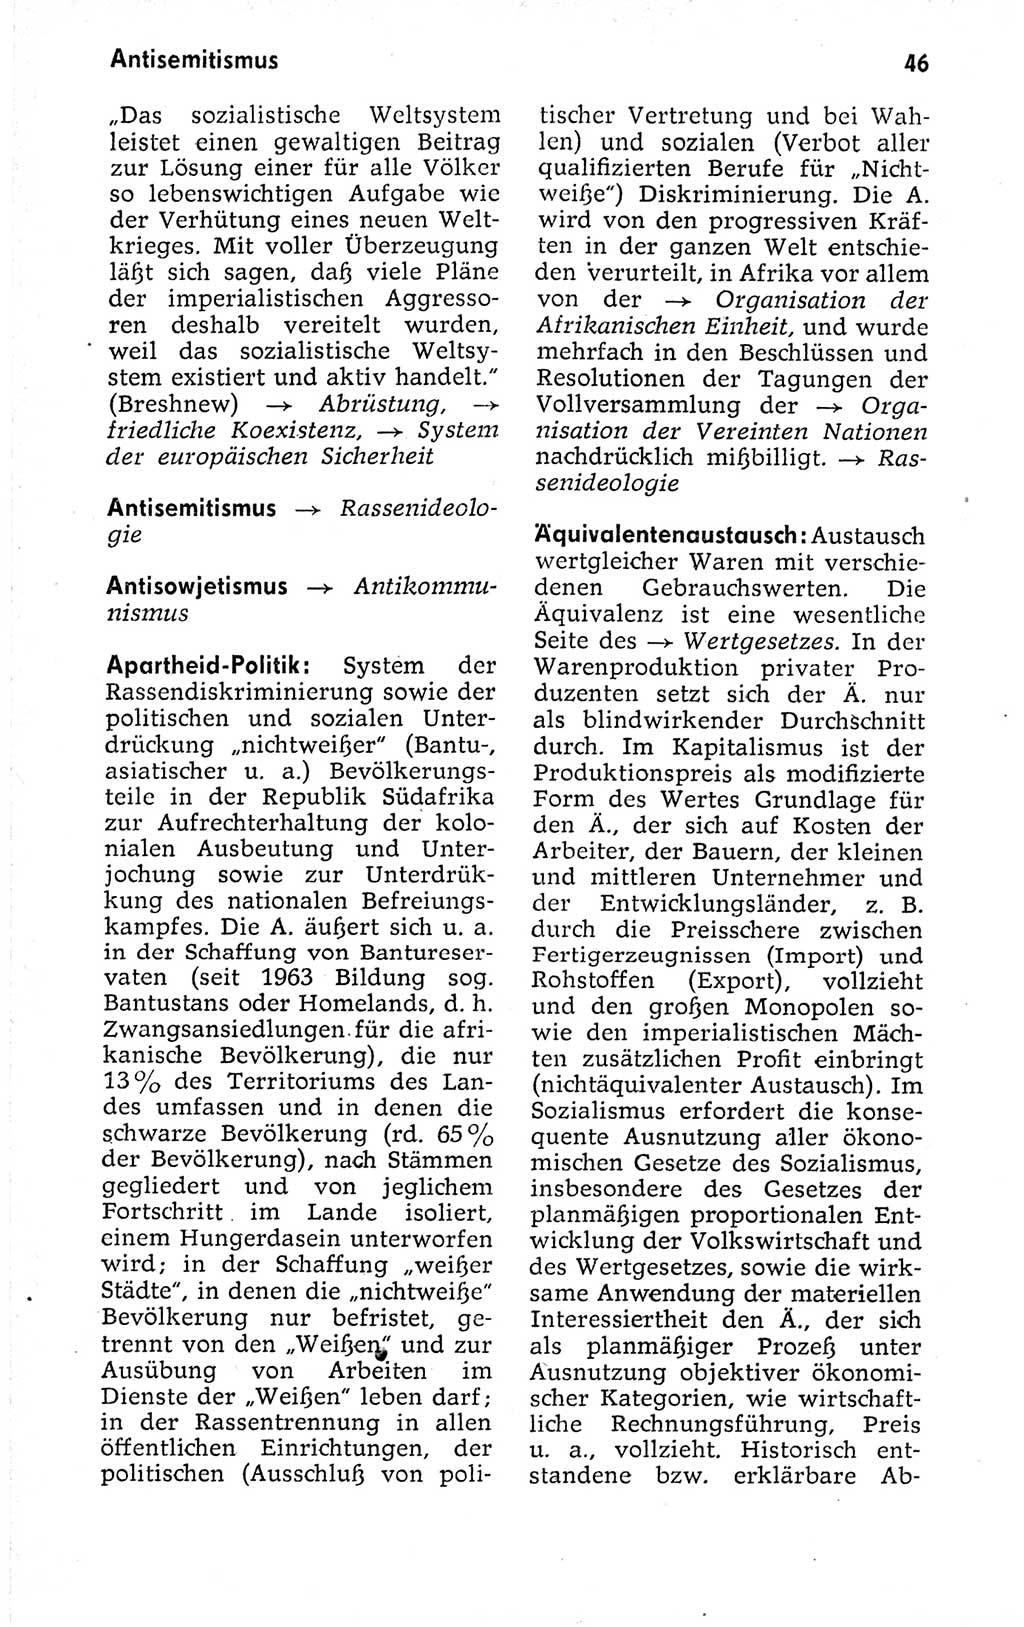 Kleines politisches Wörterbuch [Deutsche Demokratische Republik (DDR)] 1973, Seite 46 (Kl. pol. Wb. DDR 1973, S. 46)